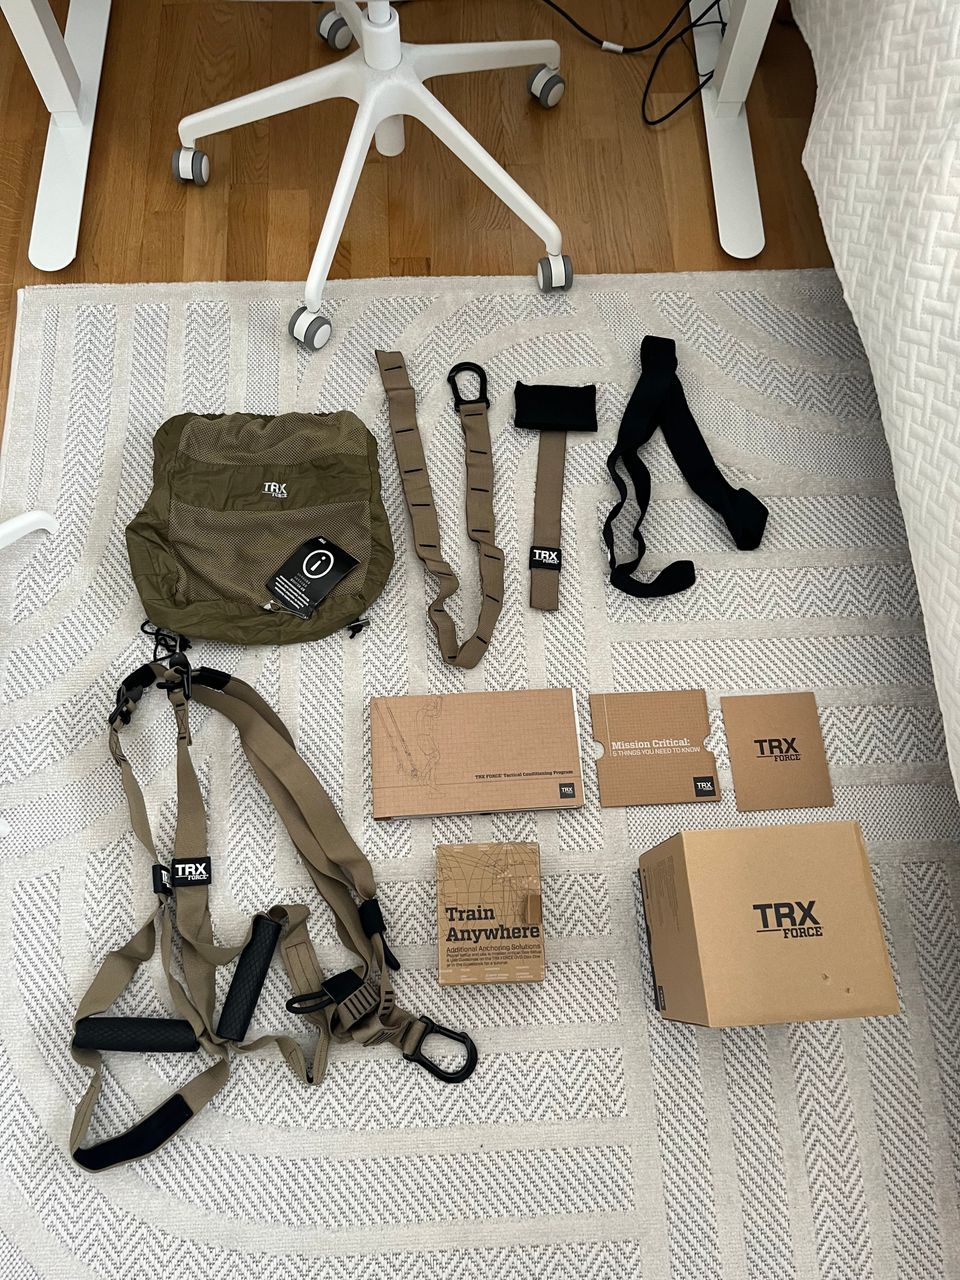 TRX Force kit